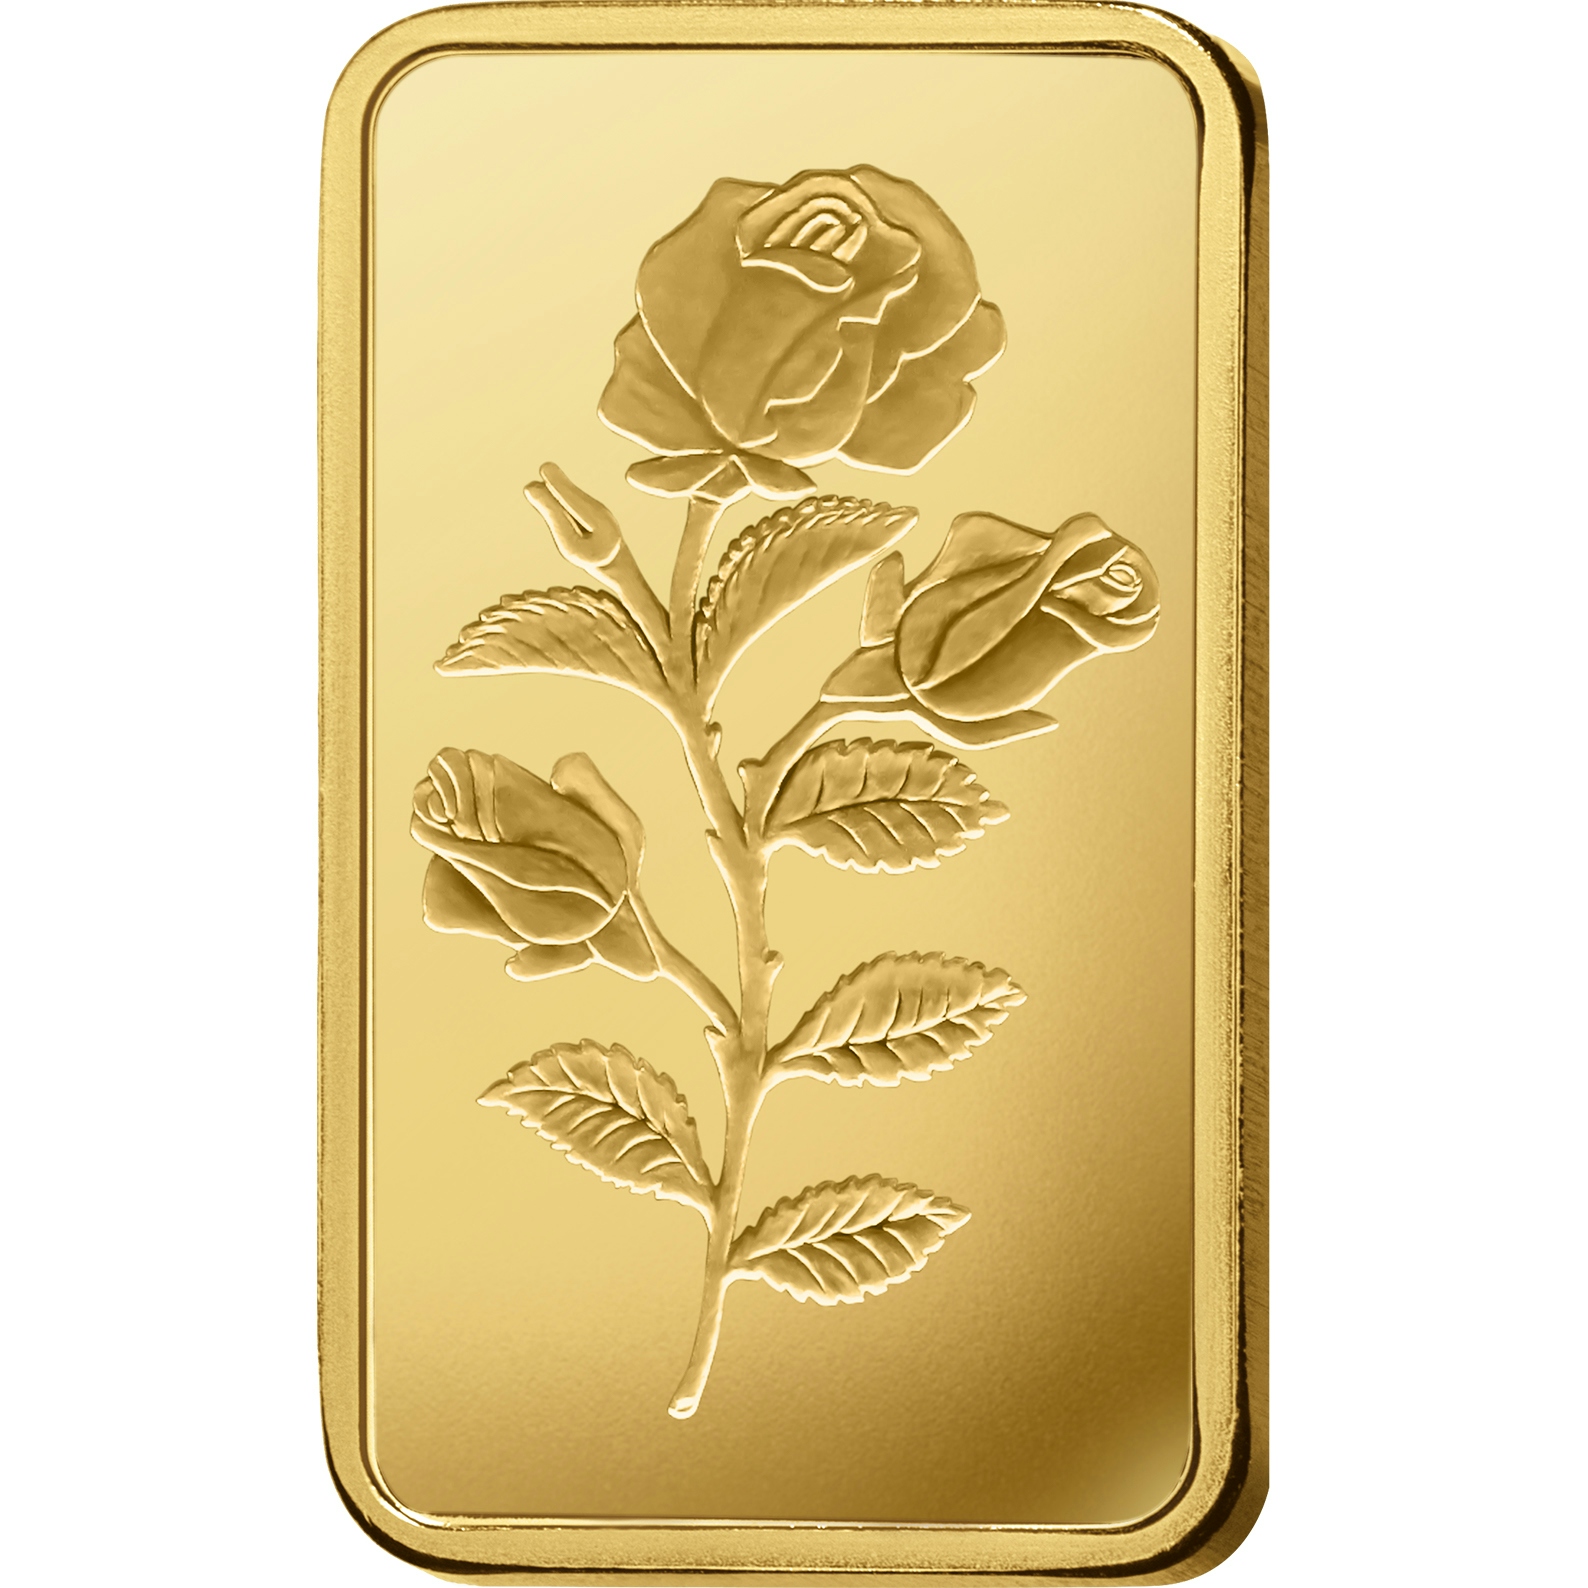 Compare oro, 50 grammi d'oro puro Rosa - PAMP Svizzera - Front